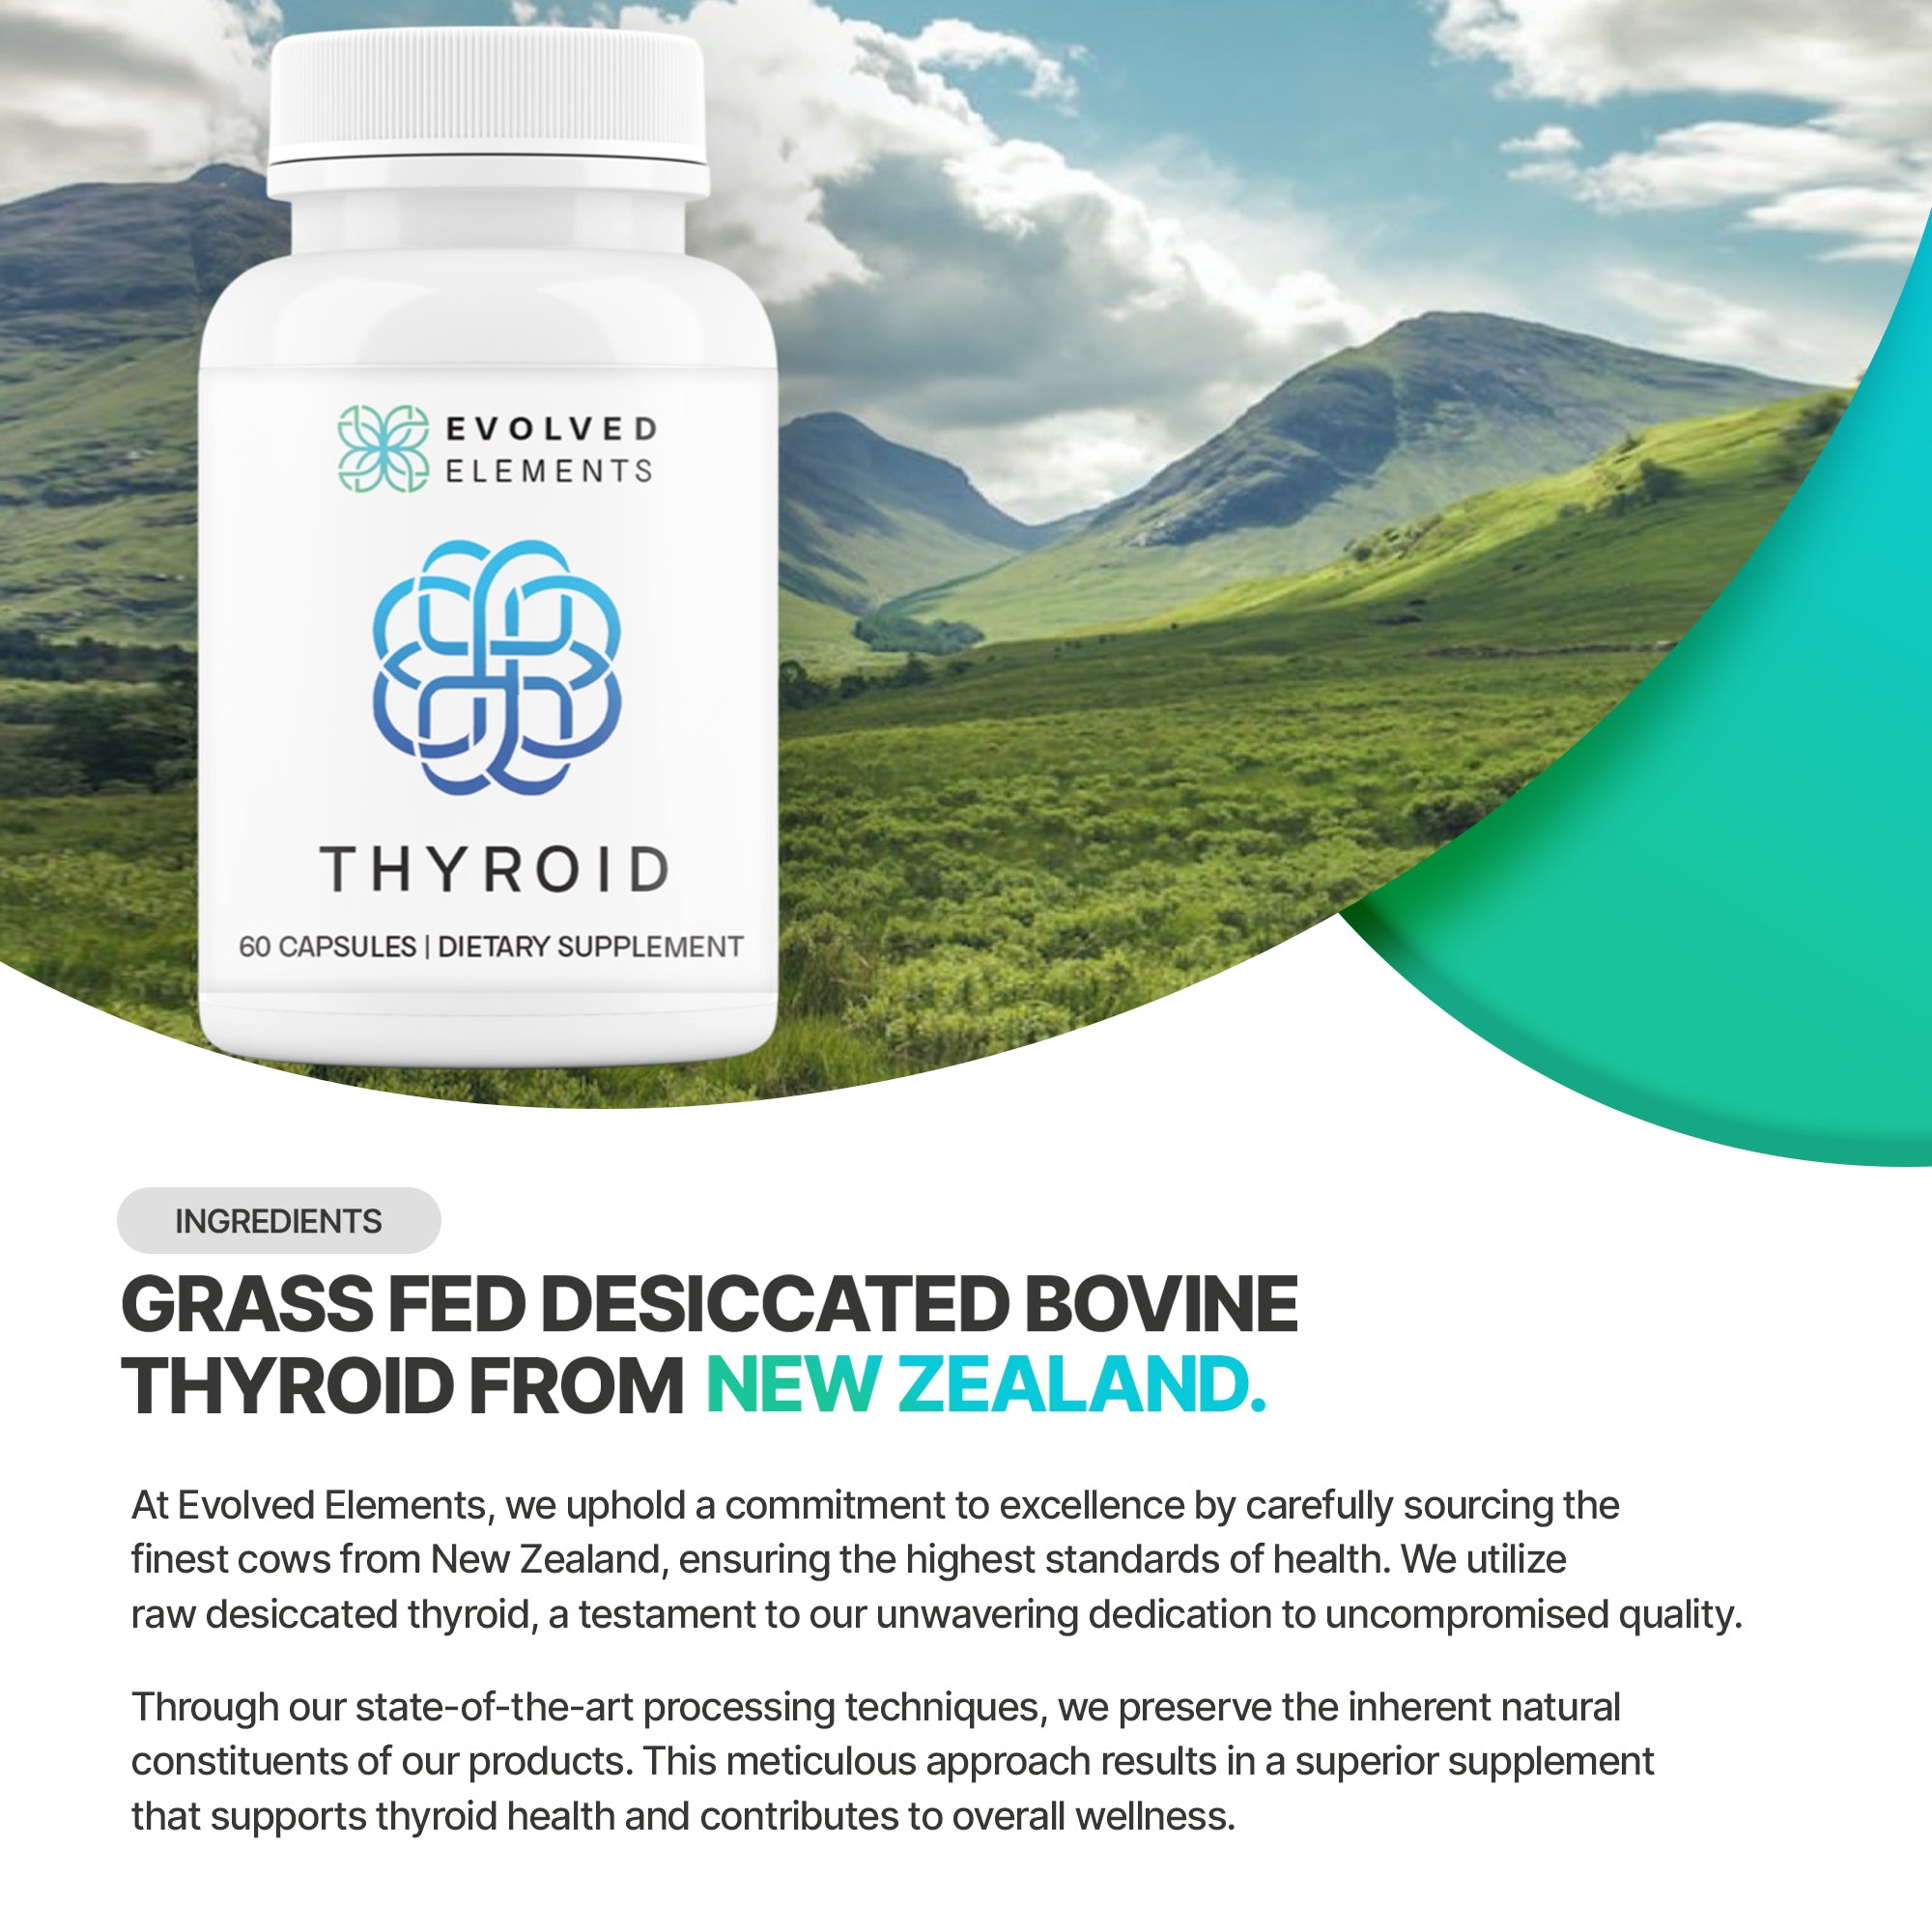 Raw Desiccated Thyroid